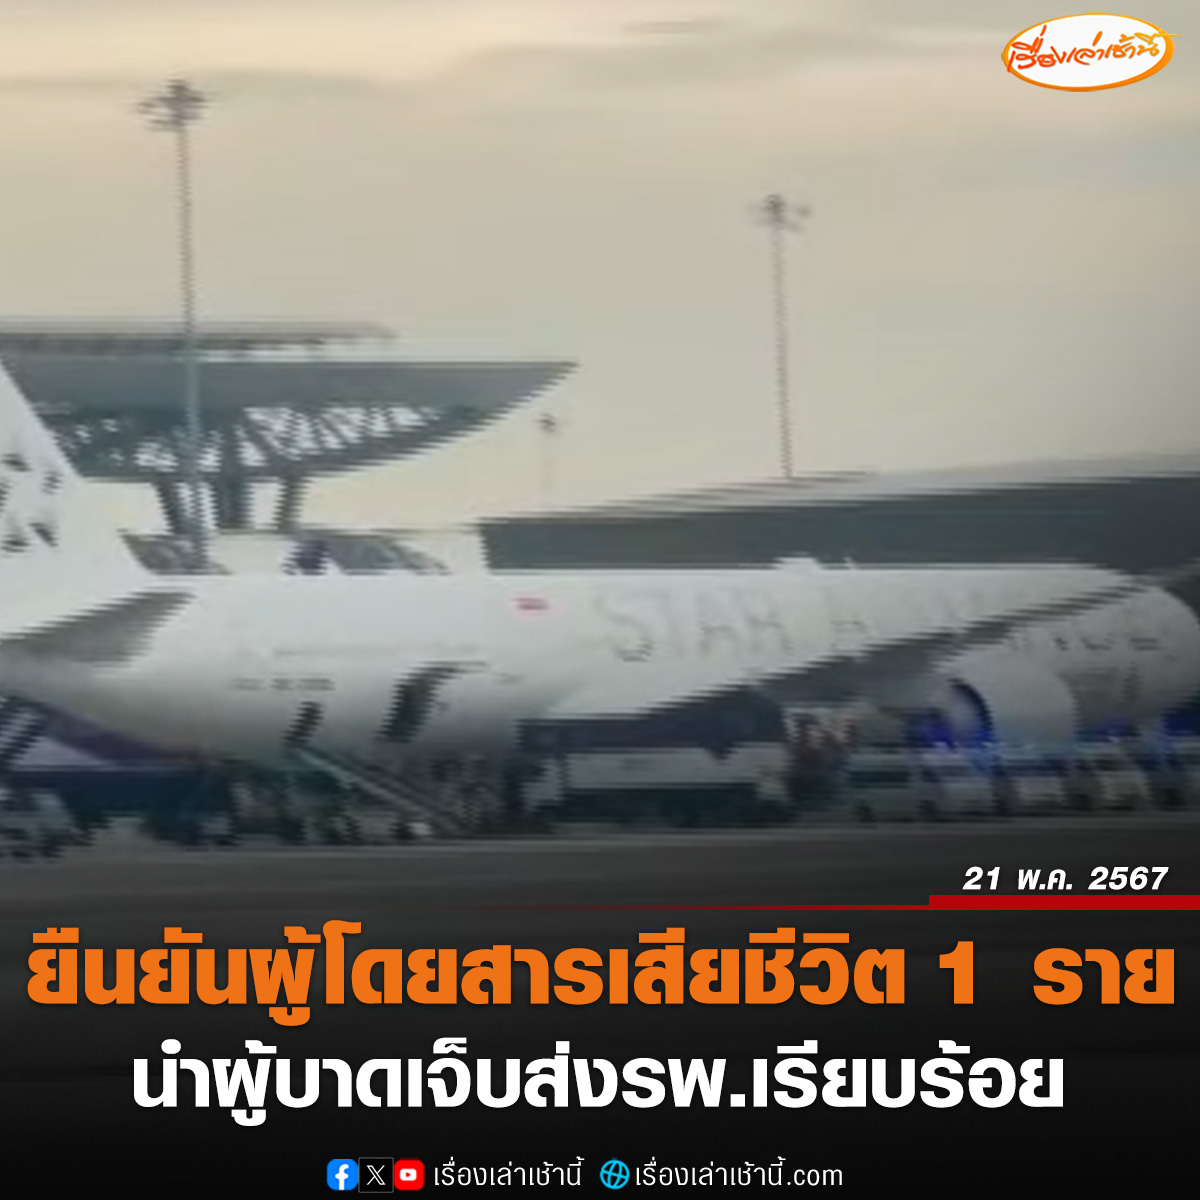 สิงคโปร์แอร์ไลน์ ออกแถลงการณ์ แสดงความเสียใจเครื่องบินตกหลุมอากาศ ต้องลงจอดฉุกเฉินที่ไทย ทำให้ผู้โดยสารเสียชีวิต 1 บาดเจ็บอีกหลายราย ขณะที่ ทอท.เผยตอนนี้ทุกอย่างเคลียร์เรียบร้อย นำผู้บาดเจ็บส่งโรงพยาบาลใกล้เคียงสนามบินแล้ว อ่านข่าว : ch3plus.com/news/social/mo… #เรื่องเล่าเช้านี้